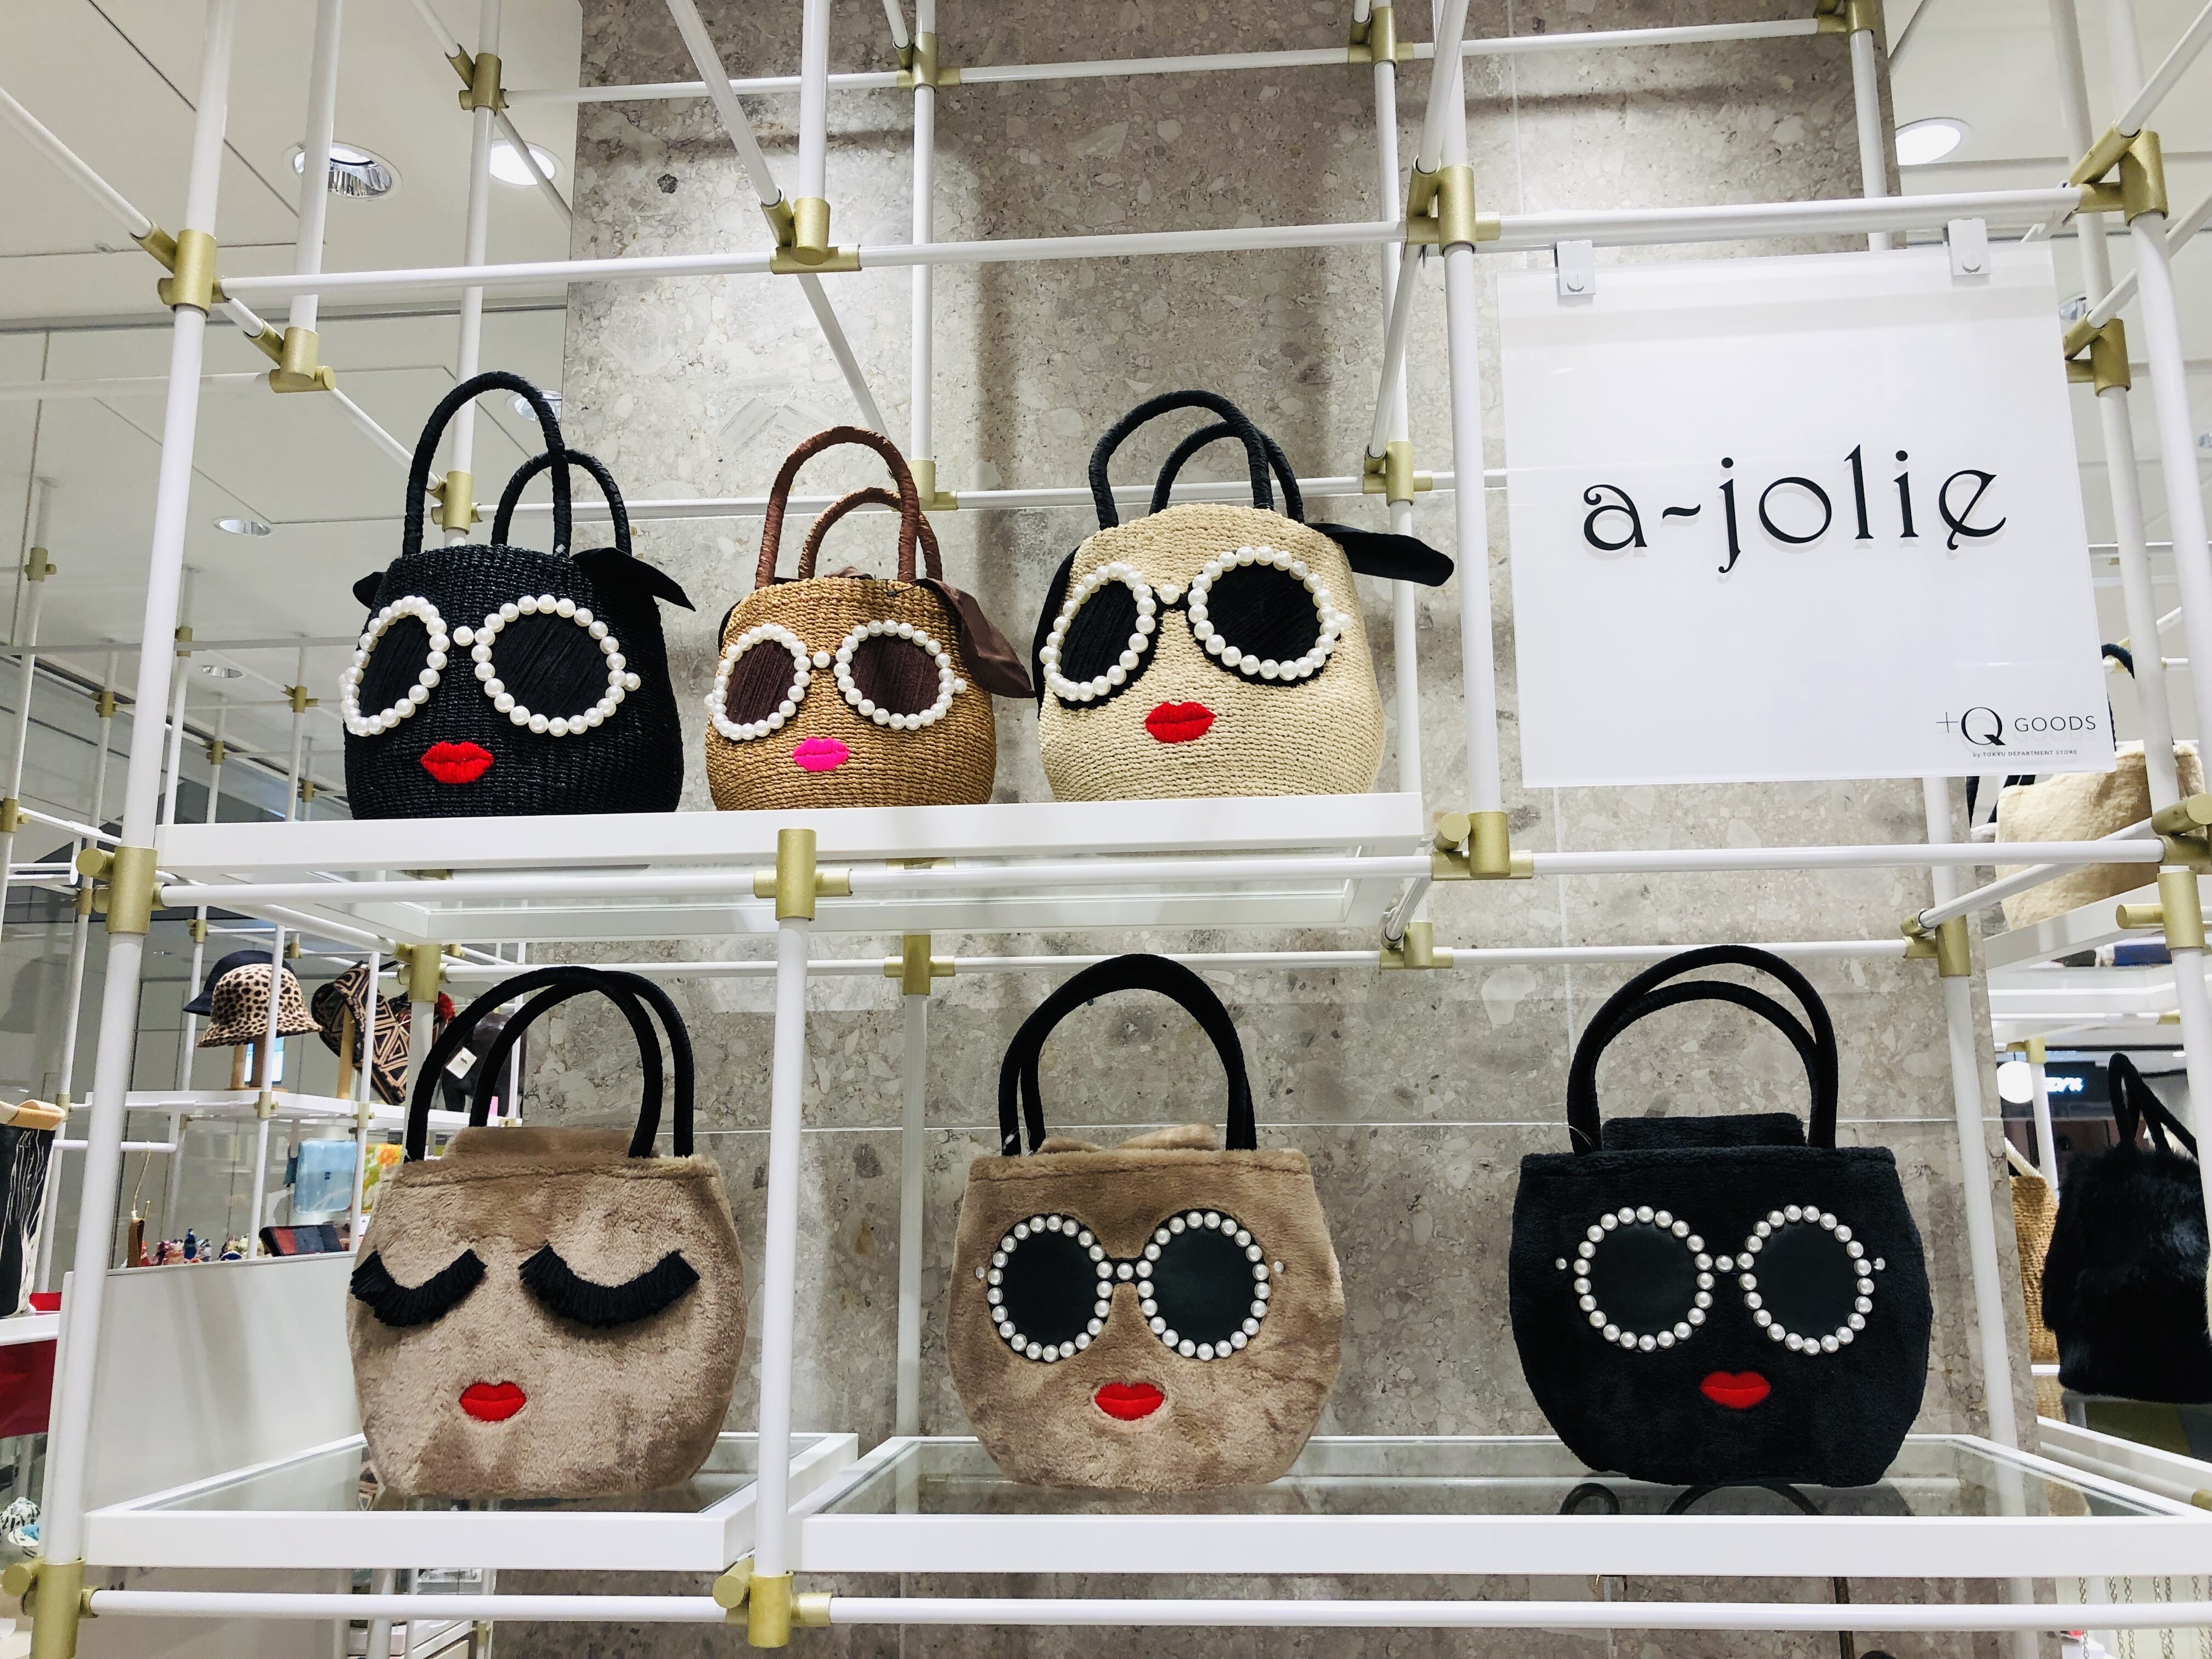 a-jolie|サングラスモチーフのバッグ、アジョリーが渋谷初出店‼︎パールサングラスのかごバッグで人気のセレクトショップです。| 渋谷